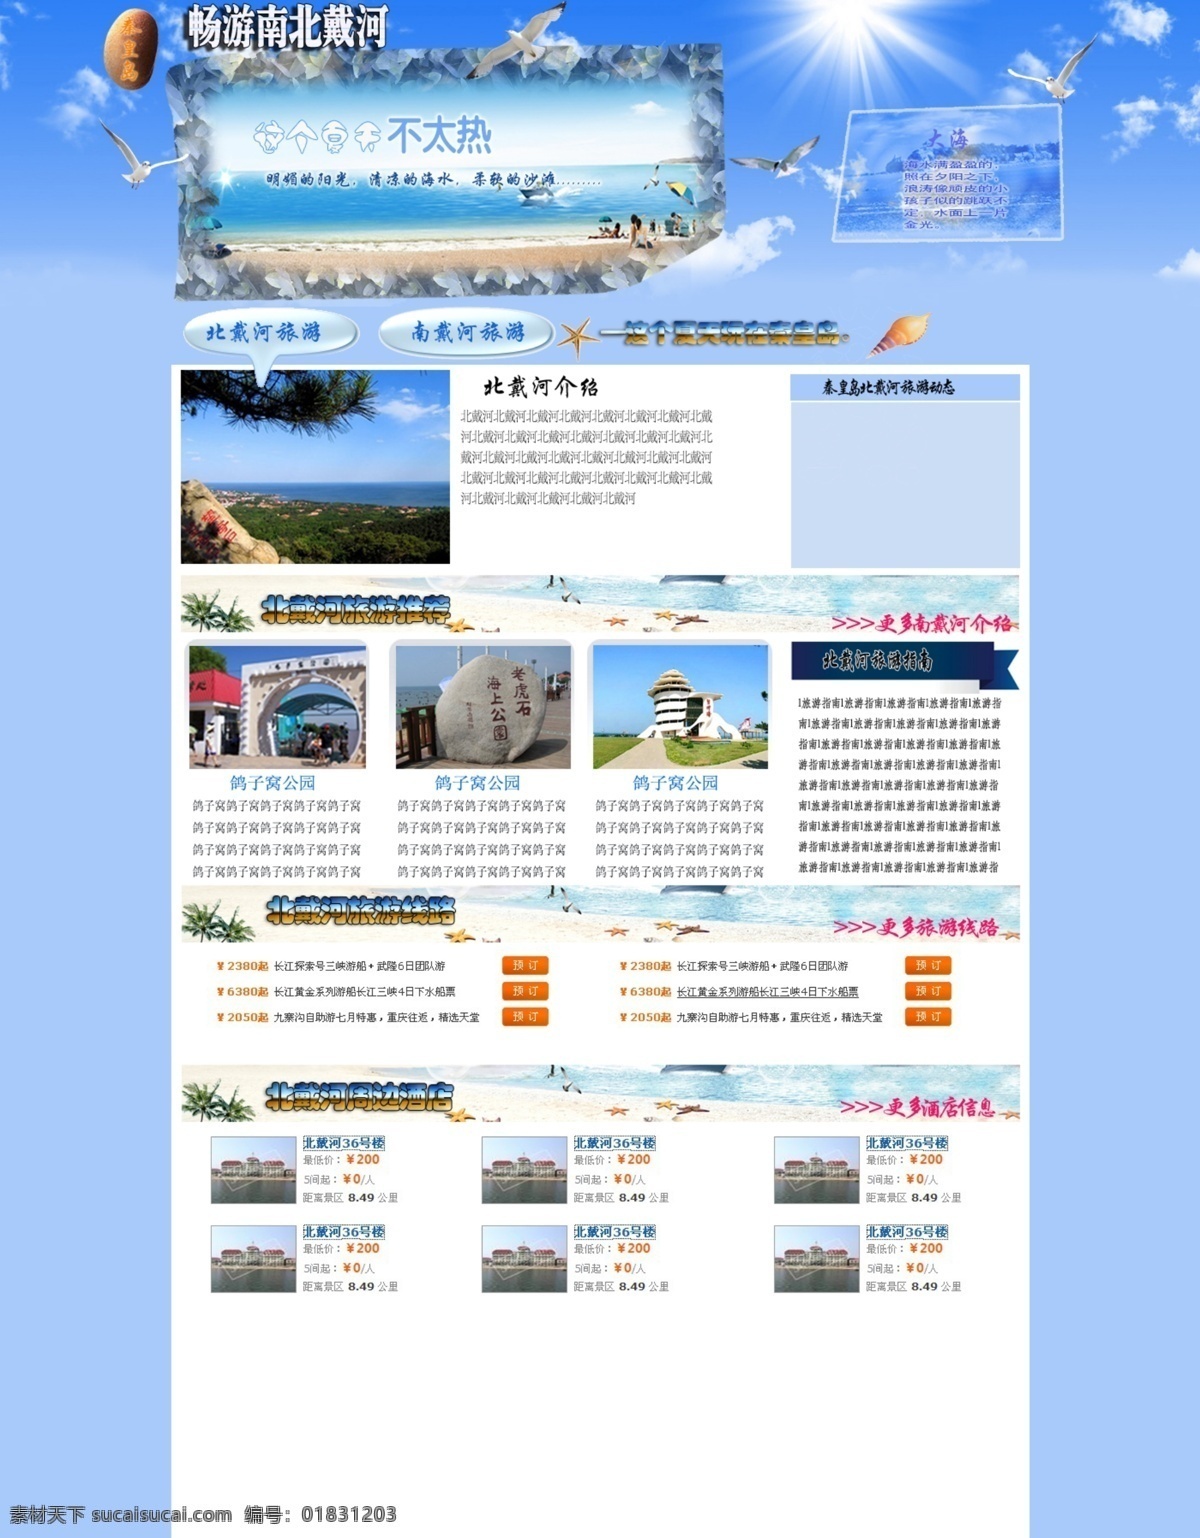 北戴河 旅游 网页模板 旅游网页 模板 网页 源文件 中文模版 网页素材